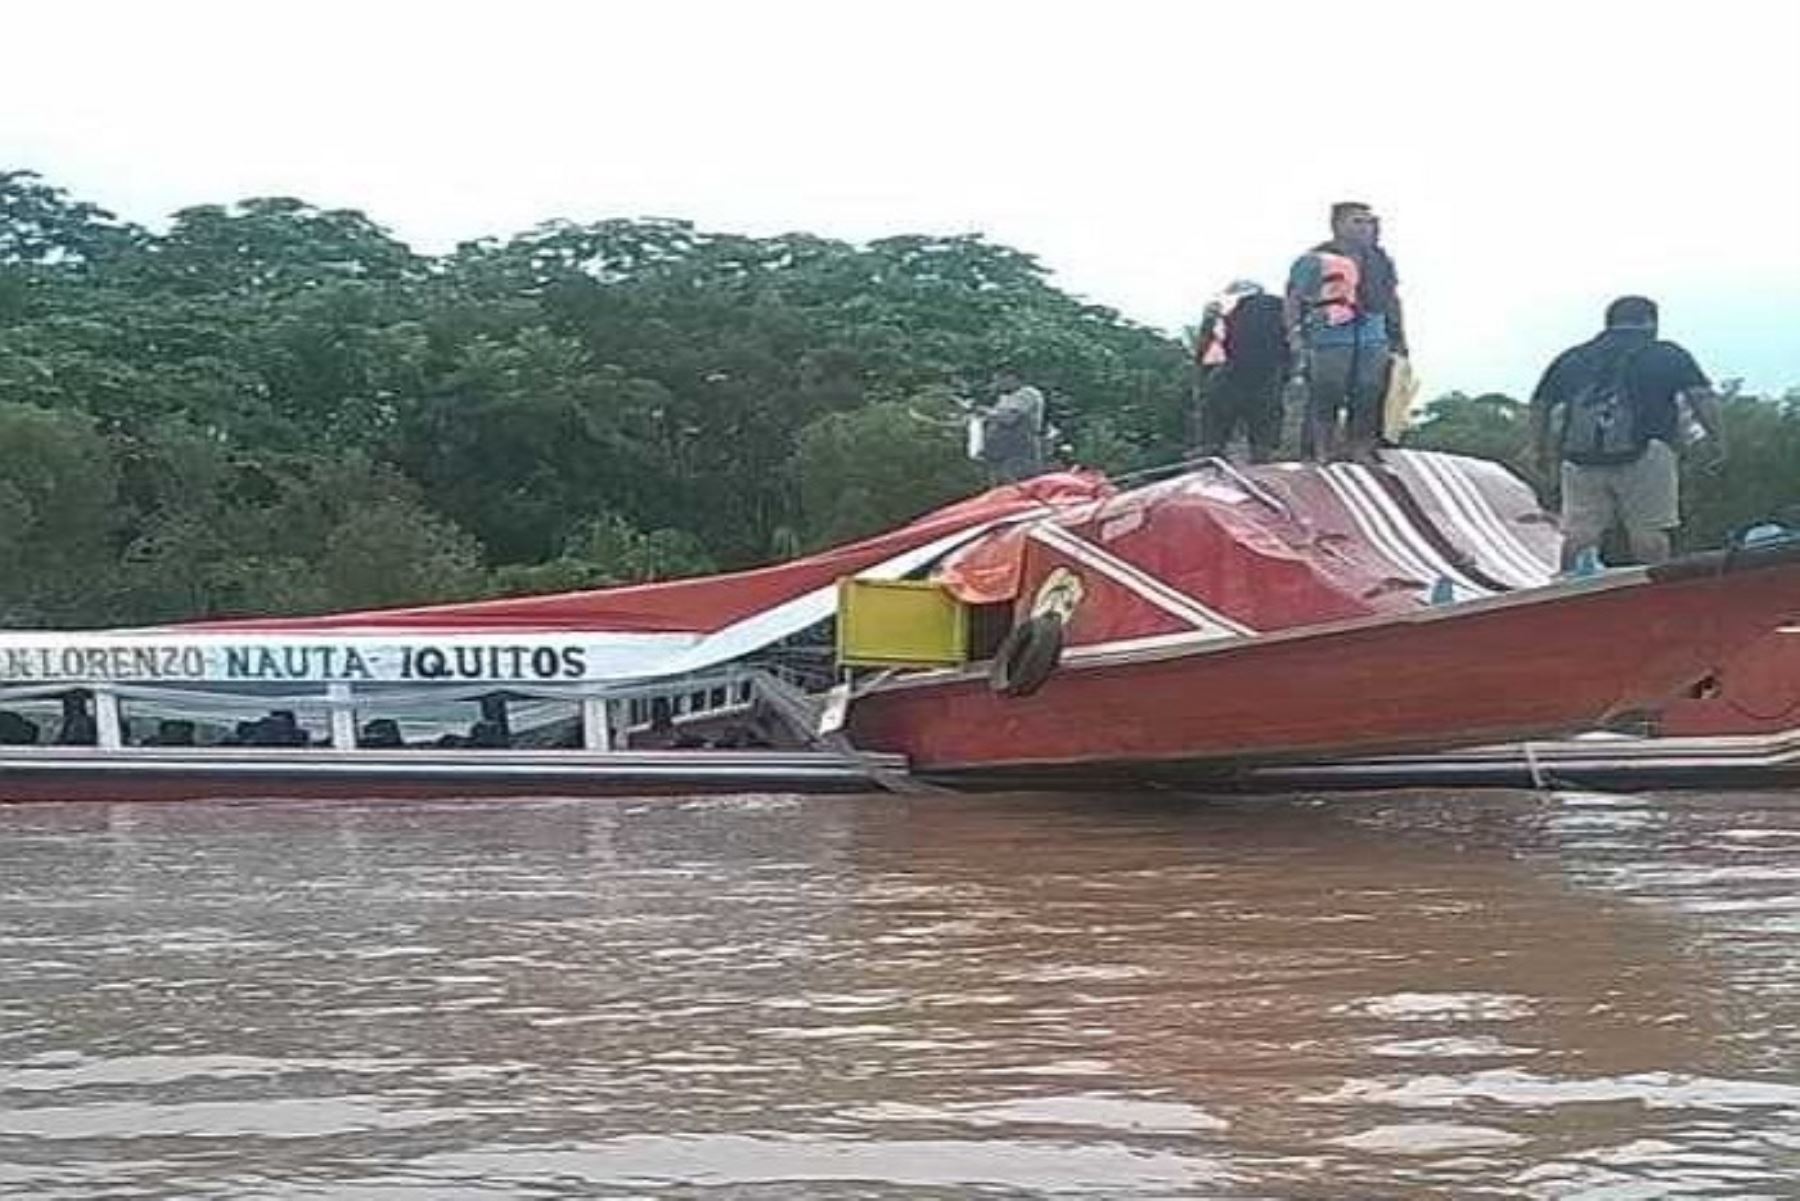 Dos muertos y varios heridos es el resultado de un choque frontal de dos embarcaciones fluviales denominados “rápidos” en las aguas del río Huallaga, a dos horas de Yurimaguas, río abajo, en la región de Loreto.